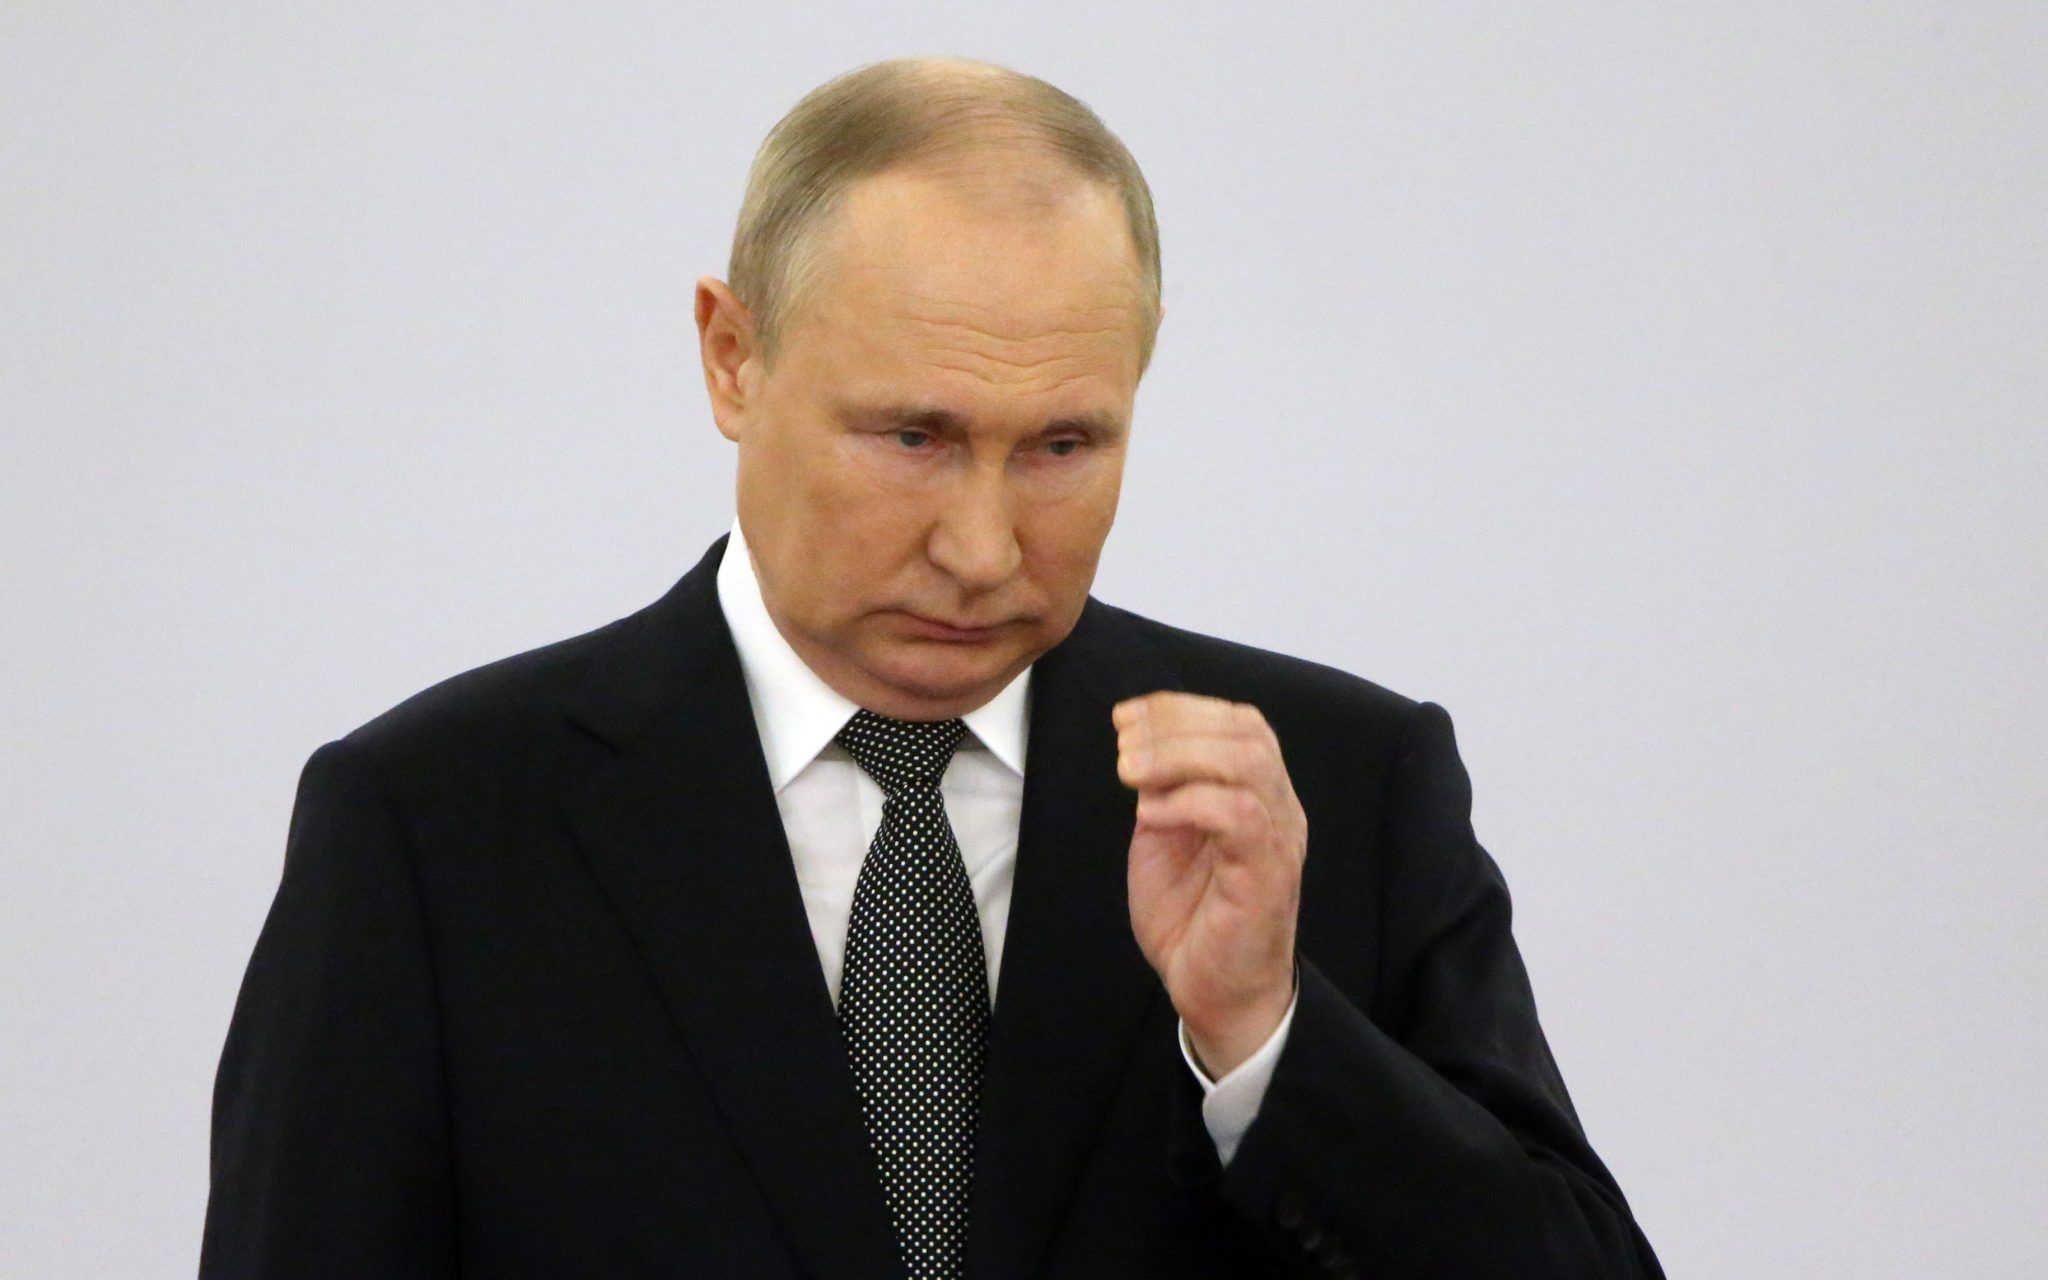 Putin embalming himself Botox